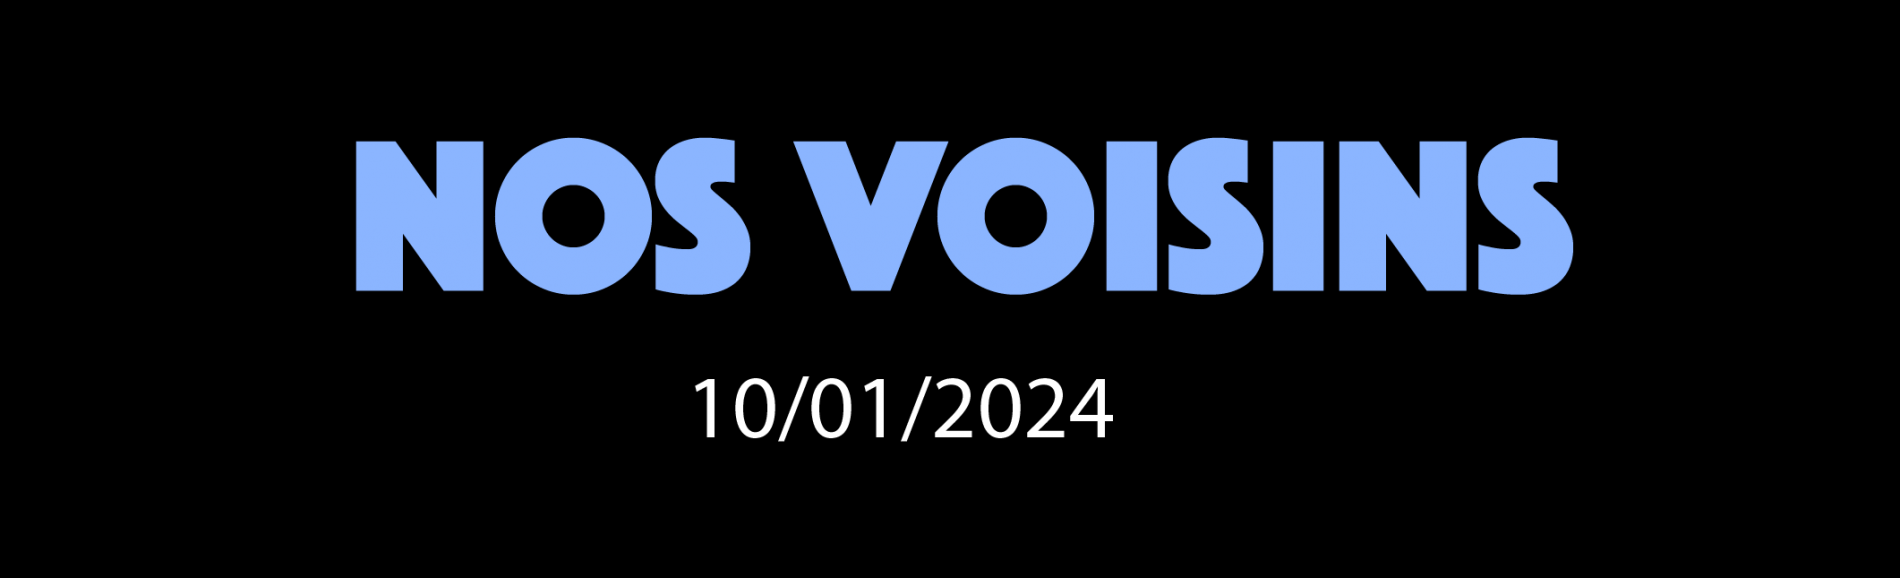 NOS VOISINS - 10/01/2024